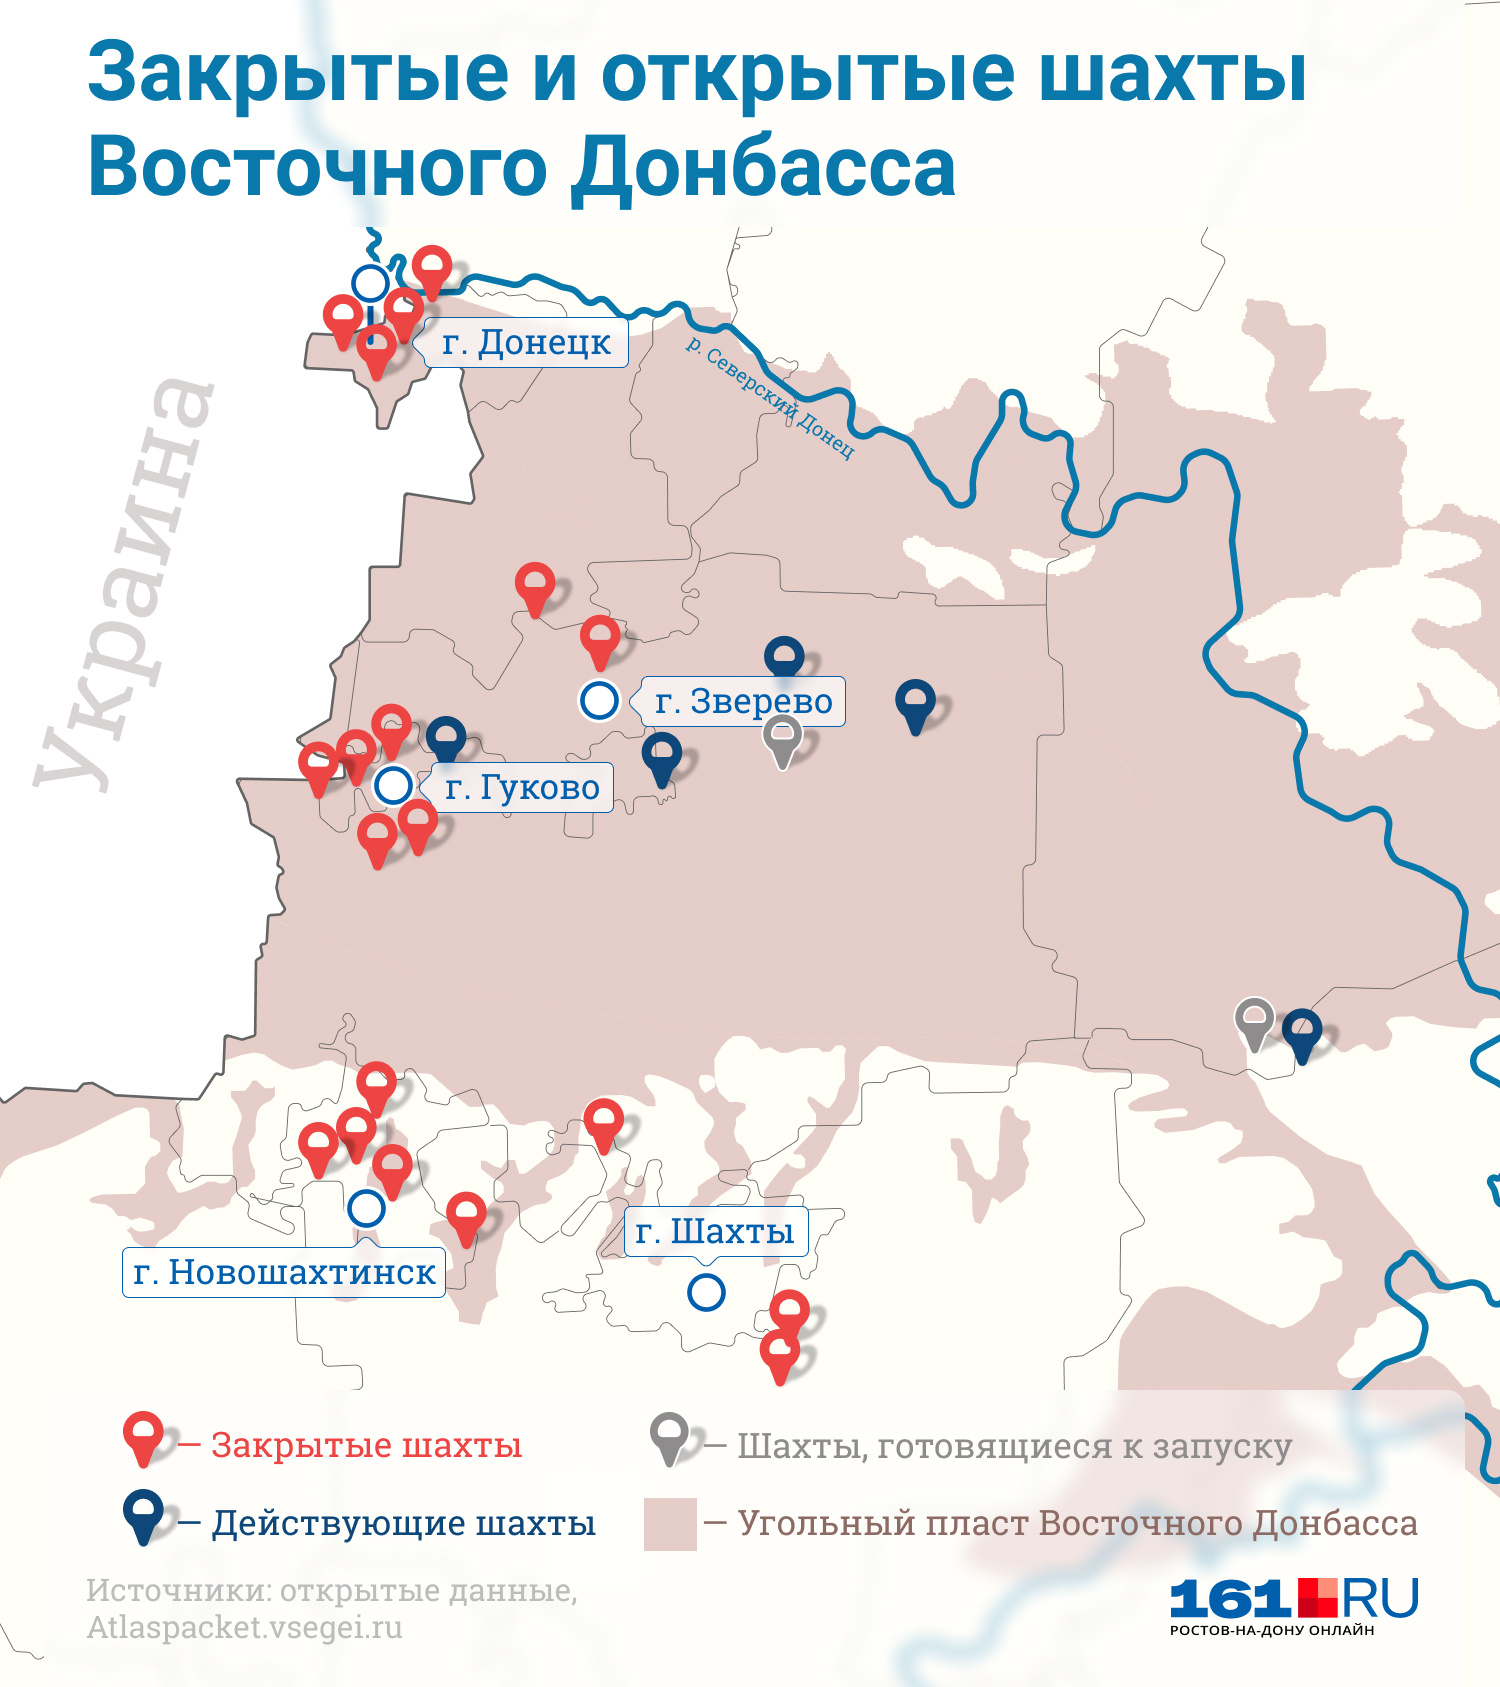 На карте представлены только некоторые закрытые шахты Восточного Донбасса, от многих других остались одни пустыри